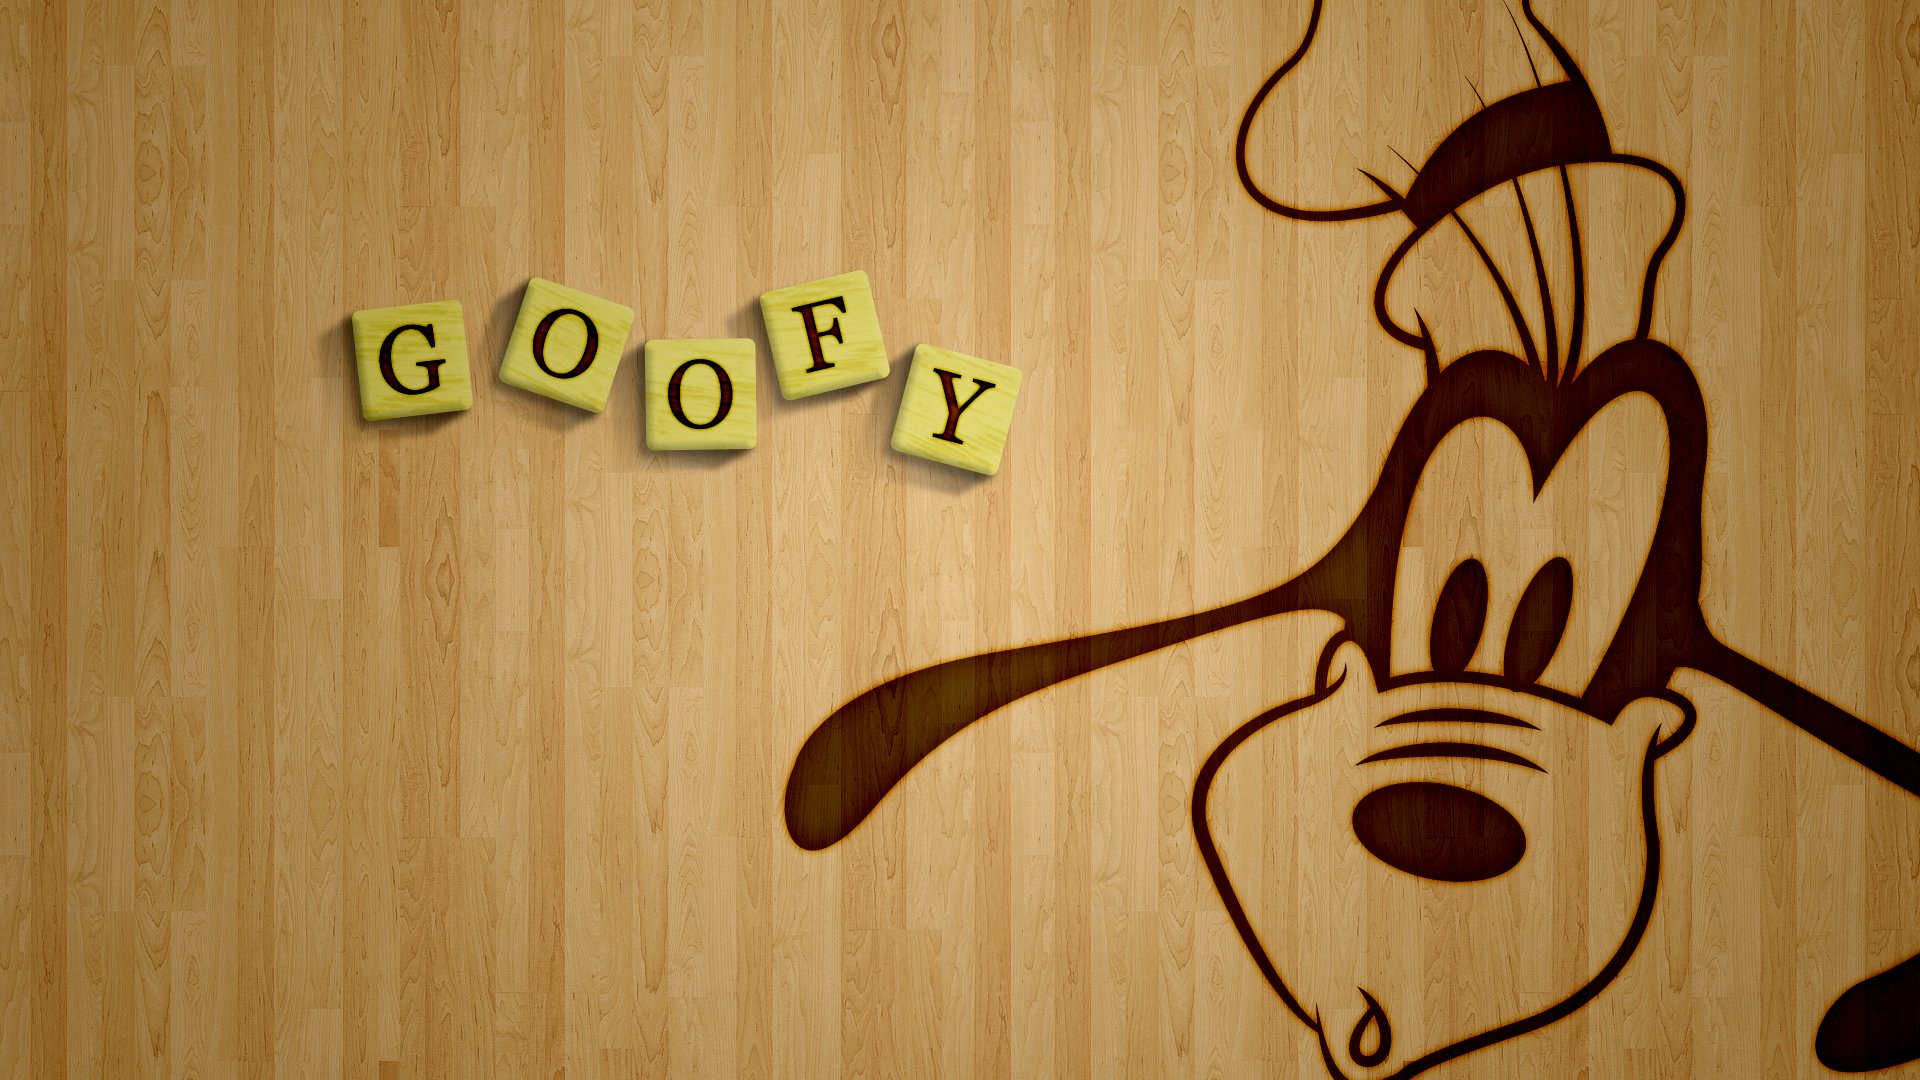 GOOFY disney family animation fantasy 1goofy comedy wallpaperx1080